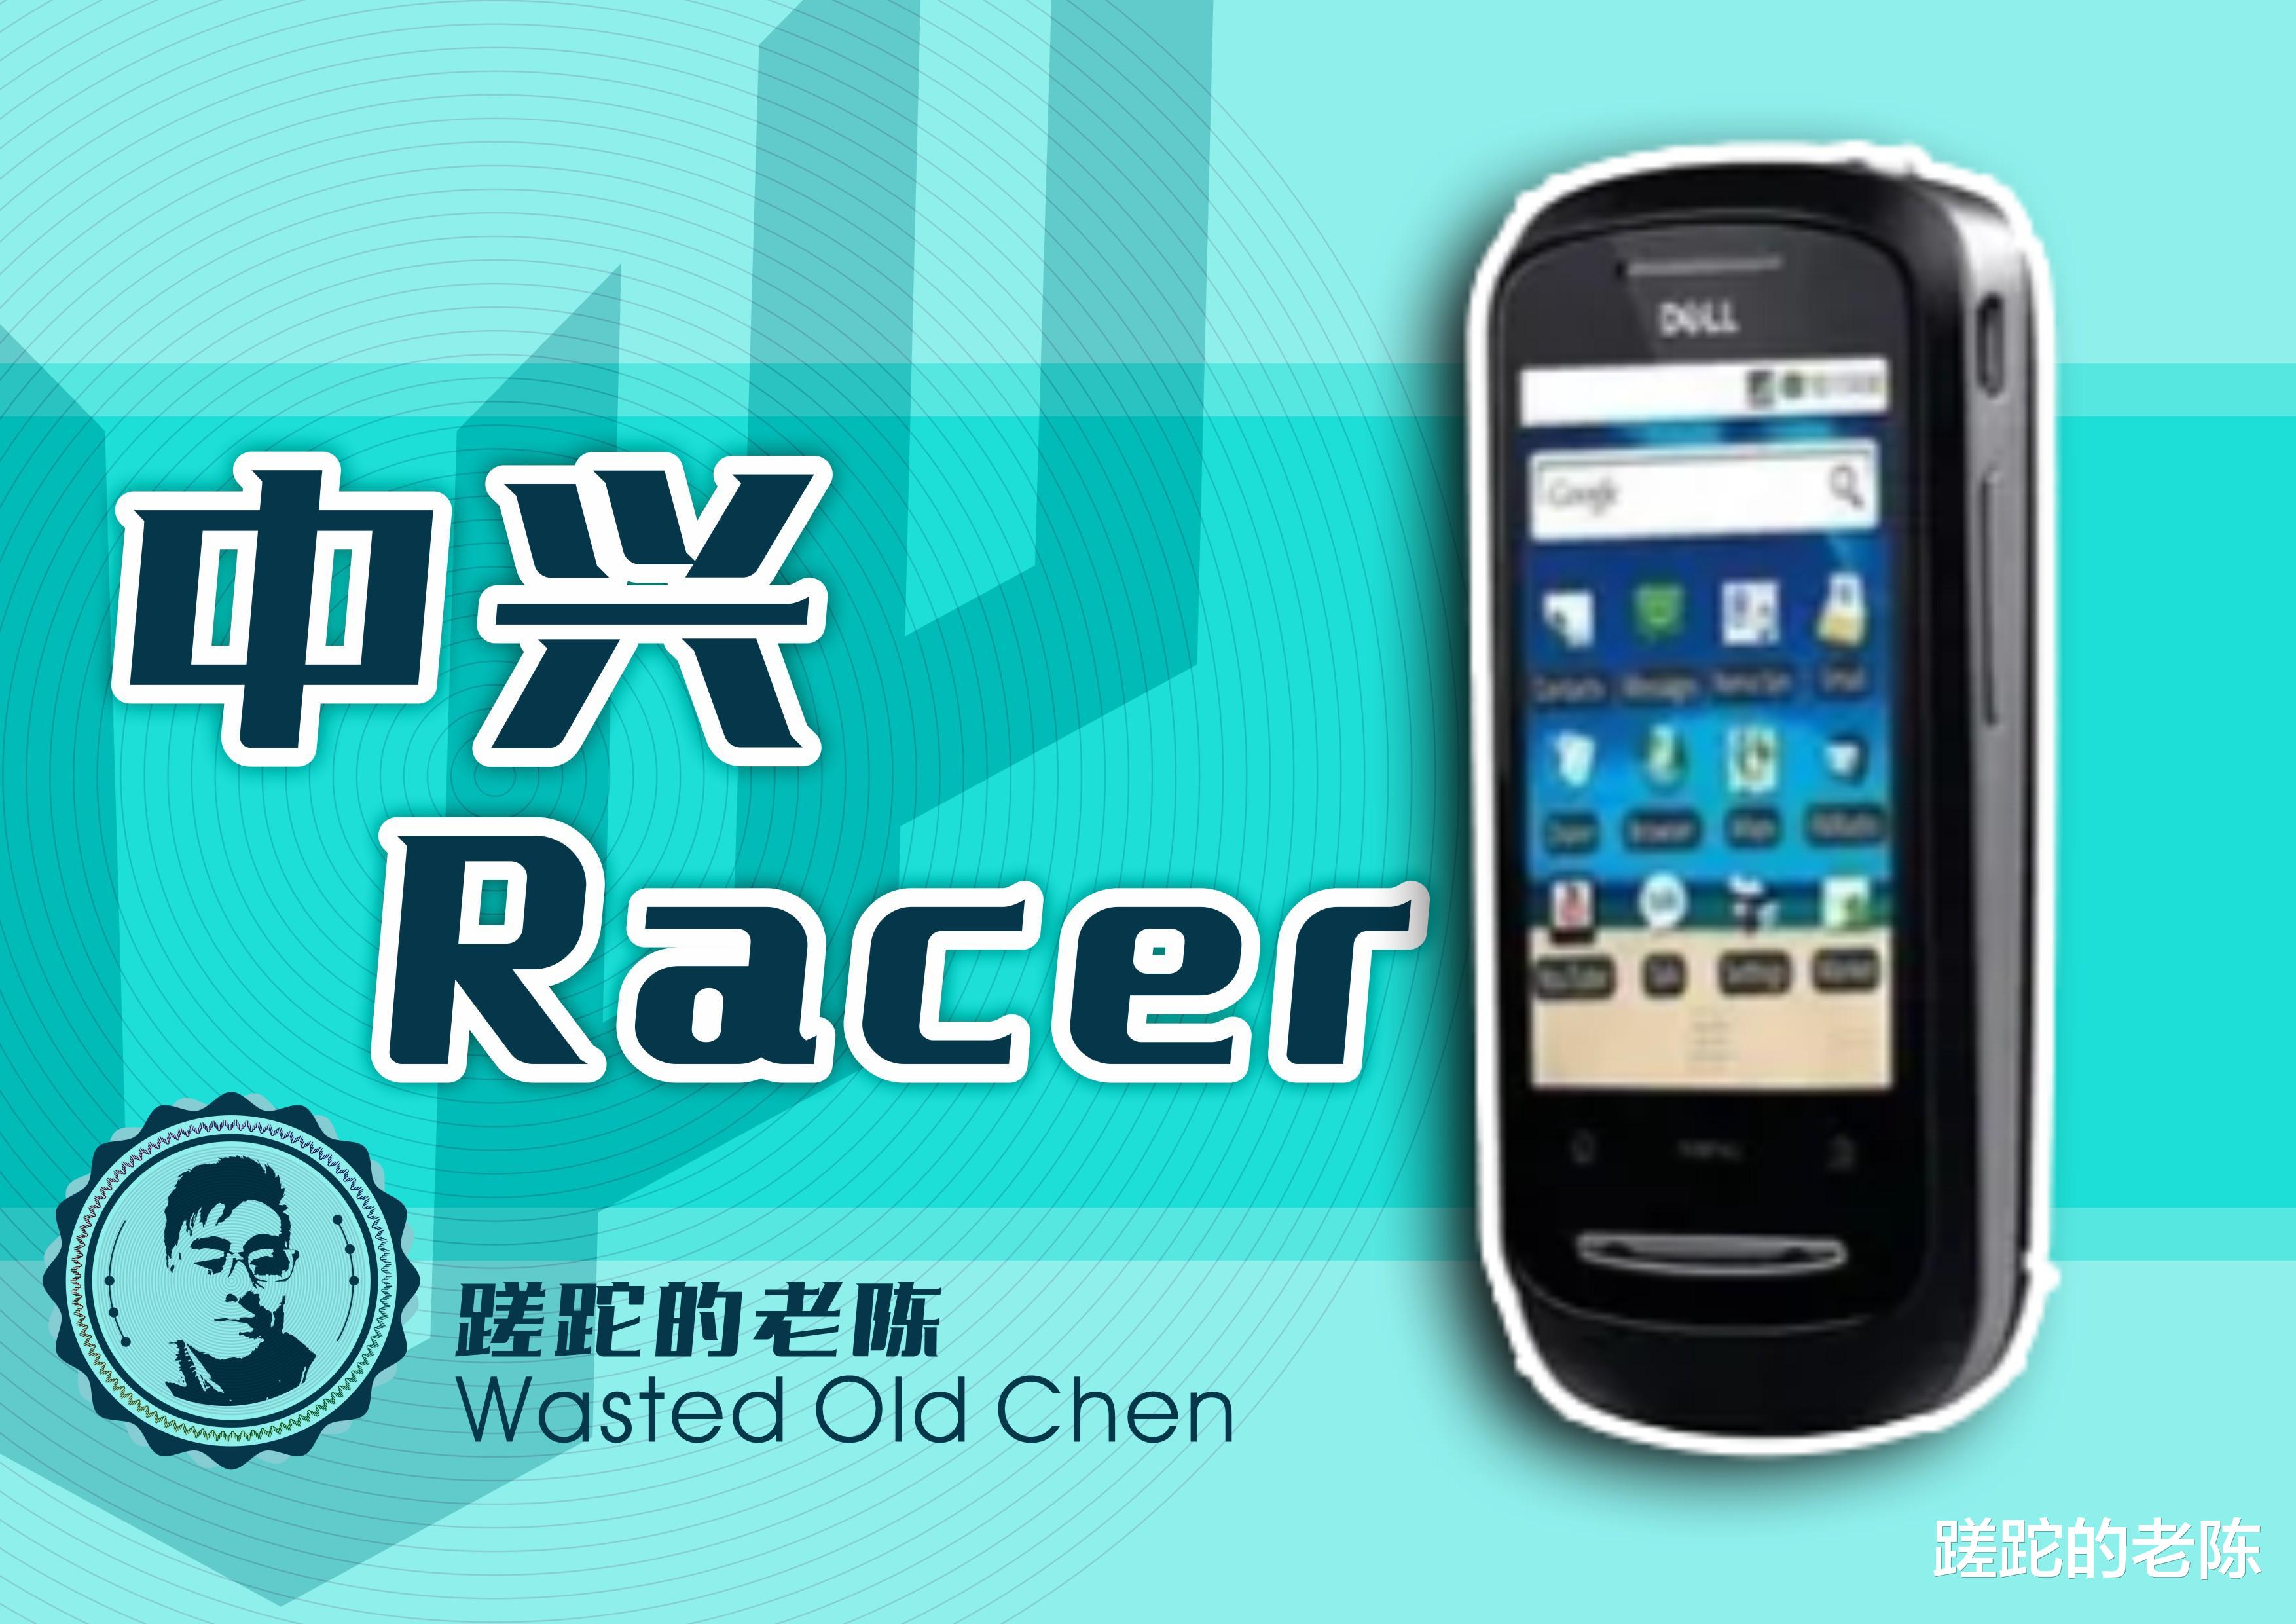 巨头的智能起点——中兴Racer系手机